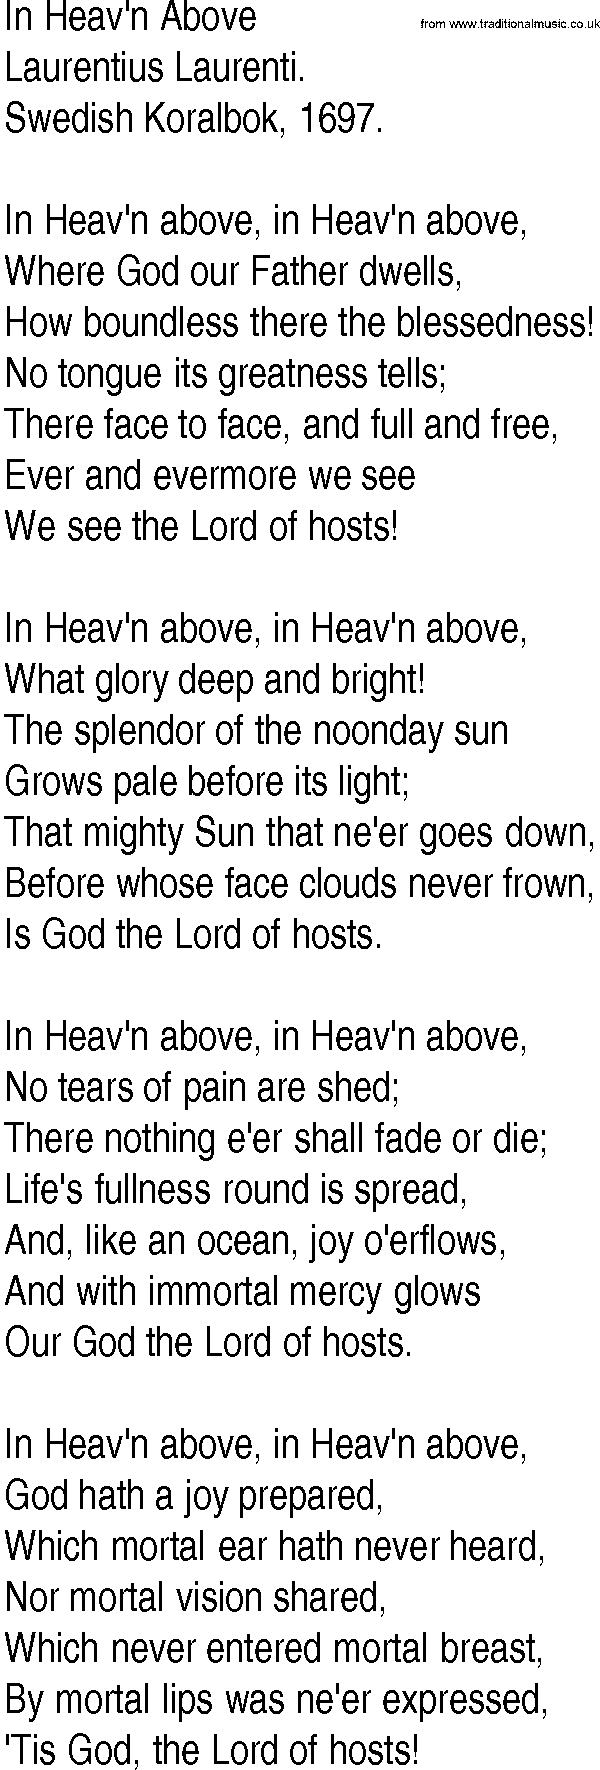 Hymn and Gospel Song: In Heav'n Above by Laurentius Laurenti lyrics